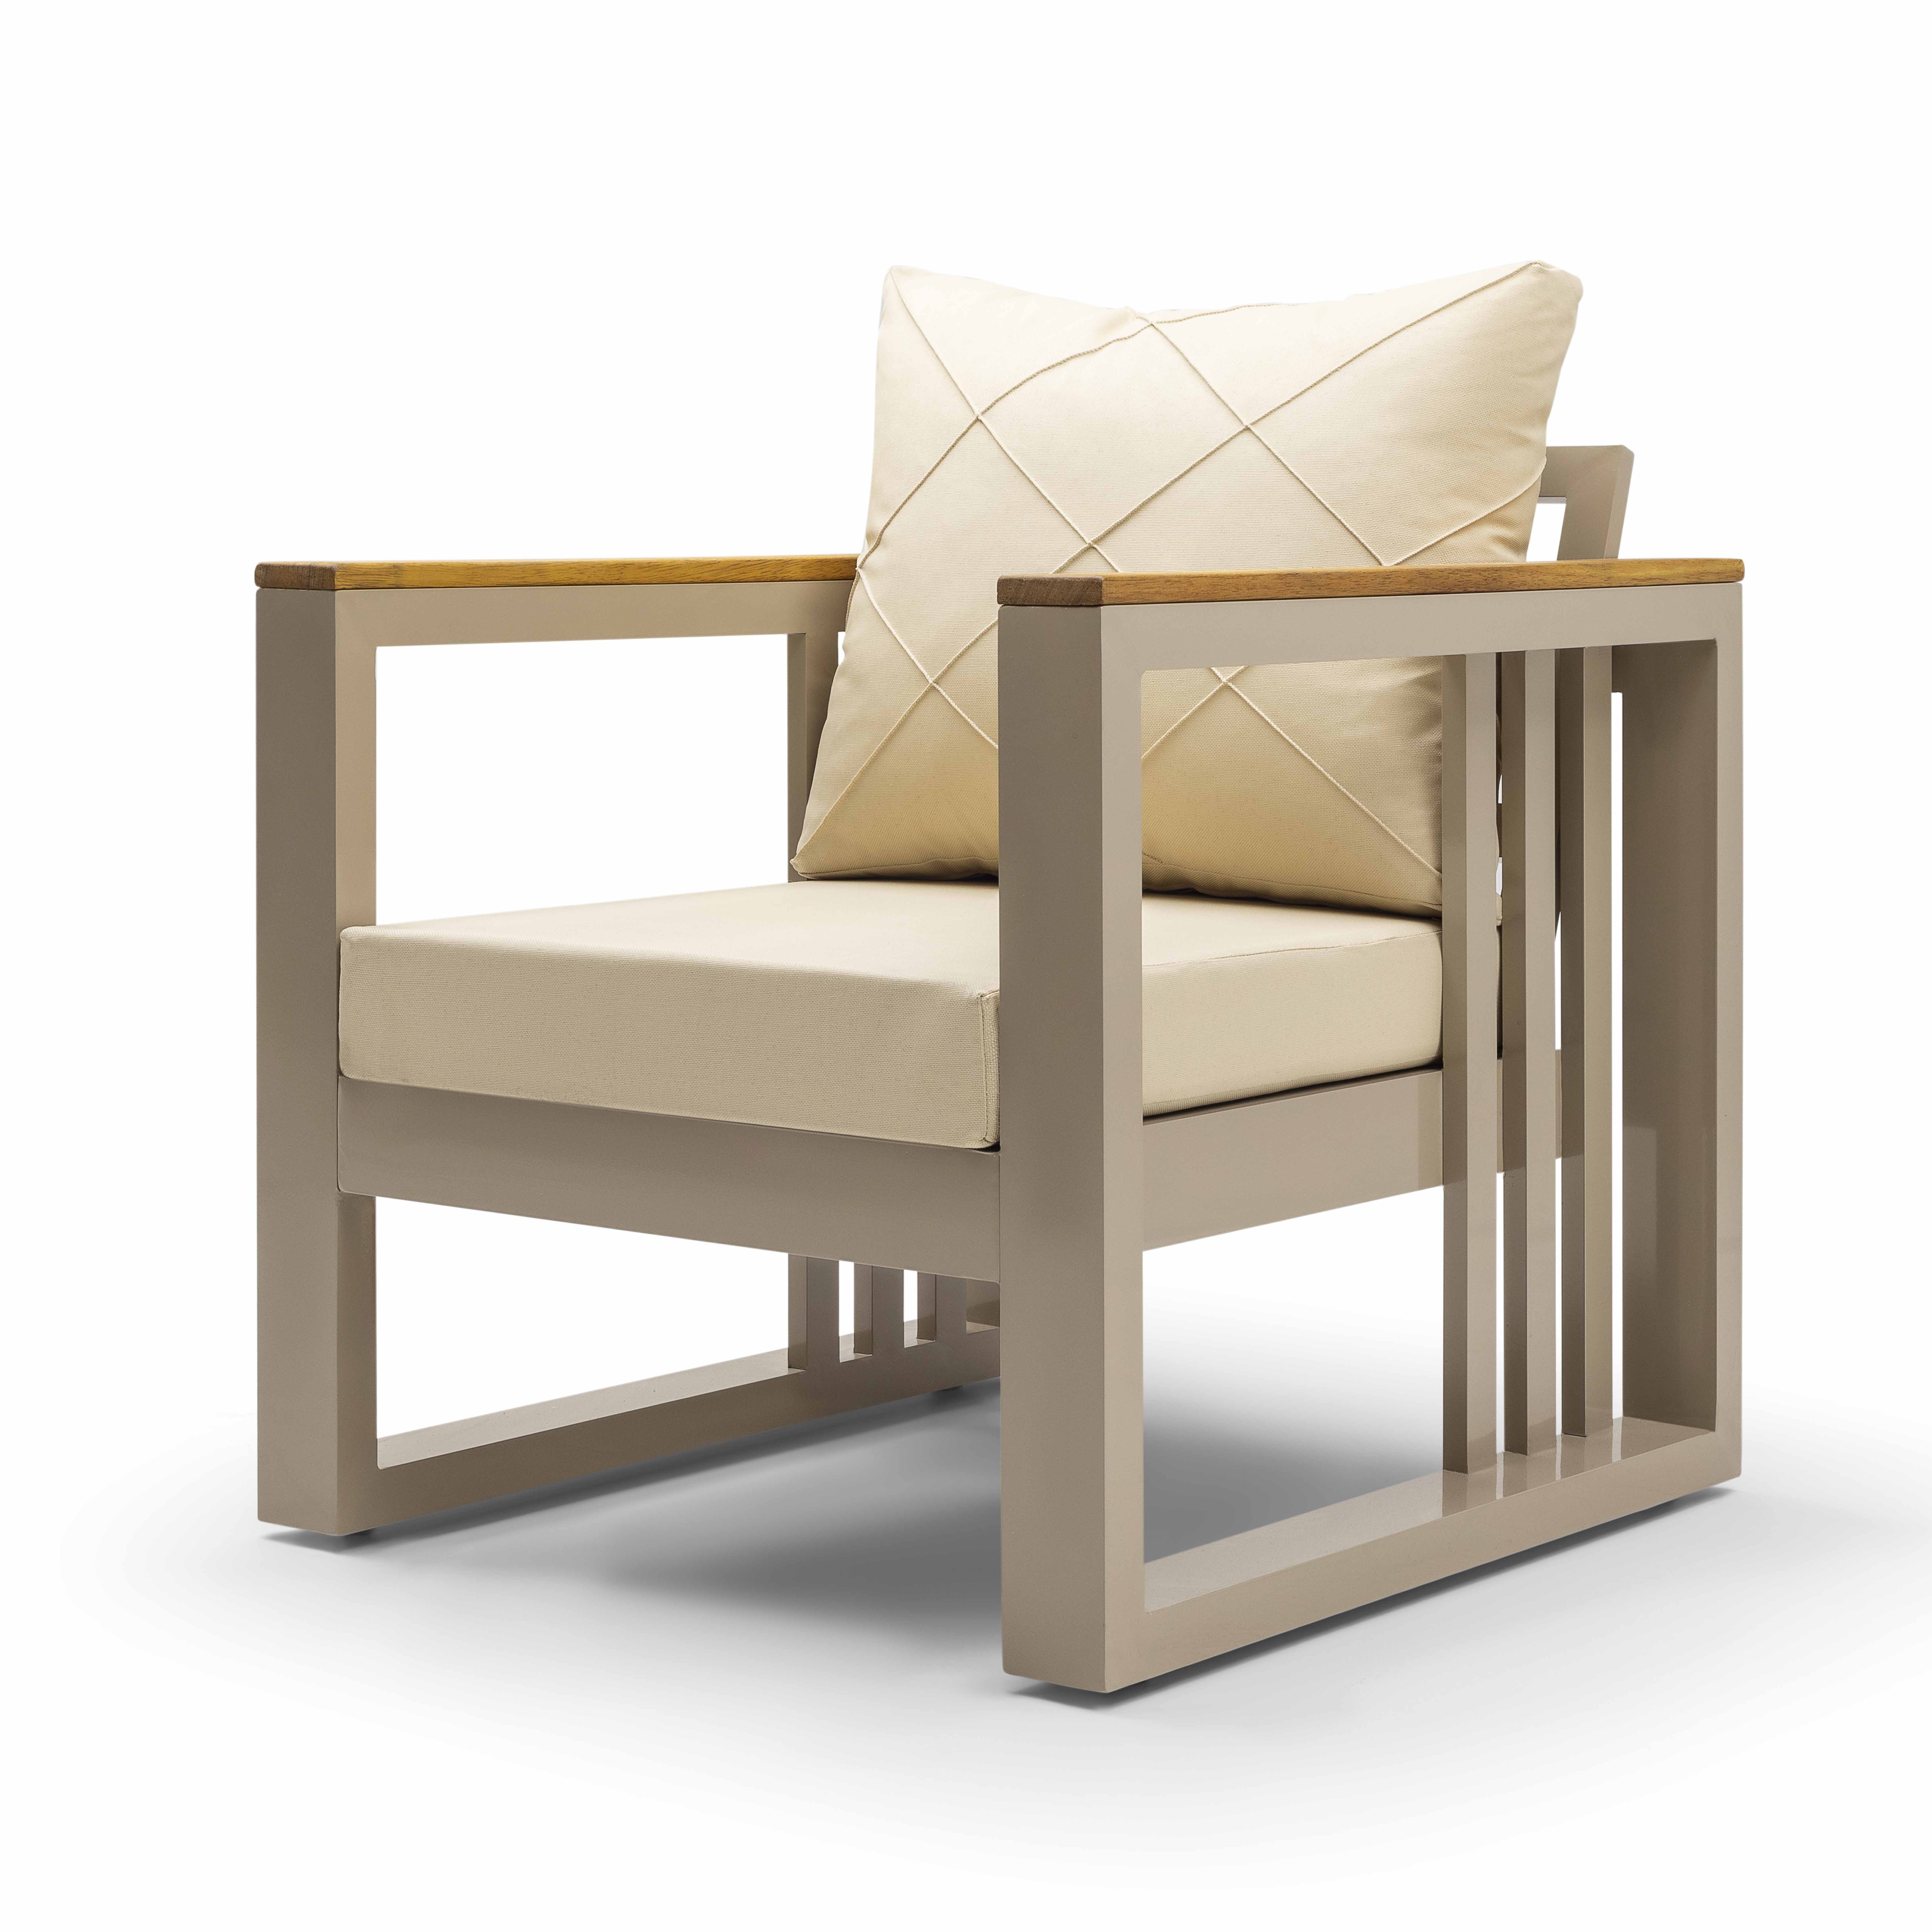 Stilona Royal - Edles Gartenlounge Möbel Set aus pflegeleichtem Aluminium mit hochwertigen Polstern